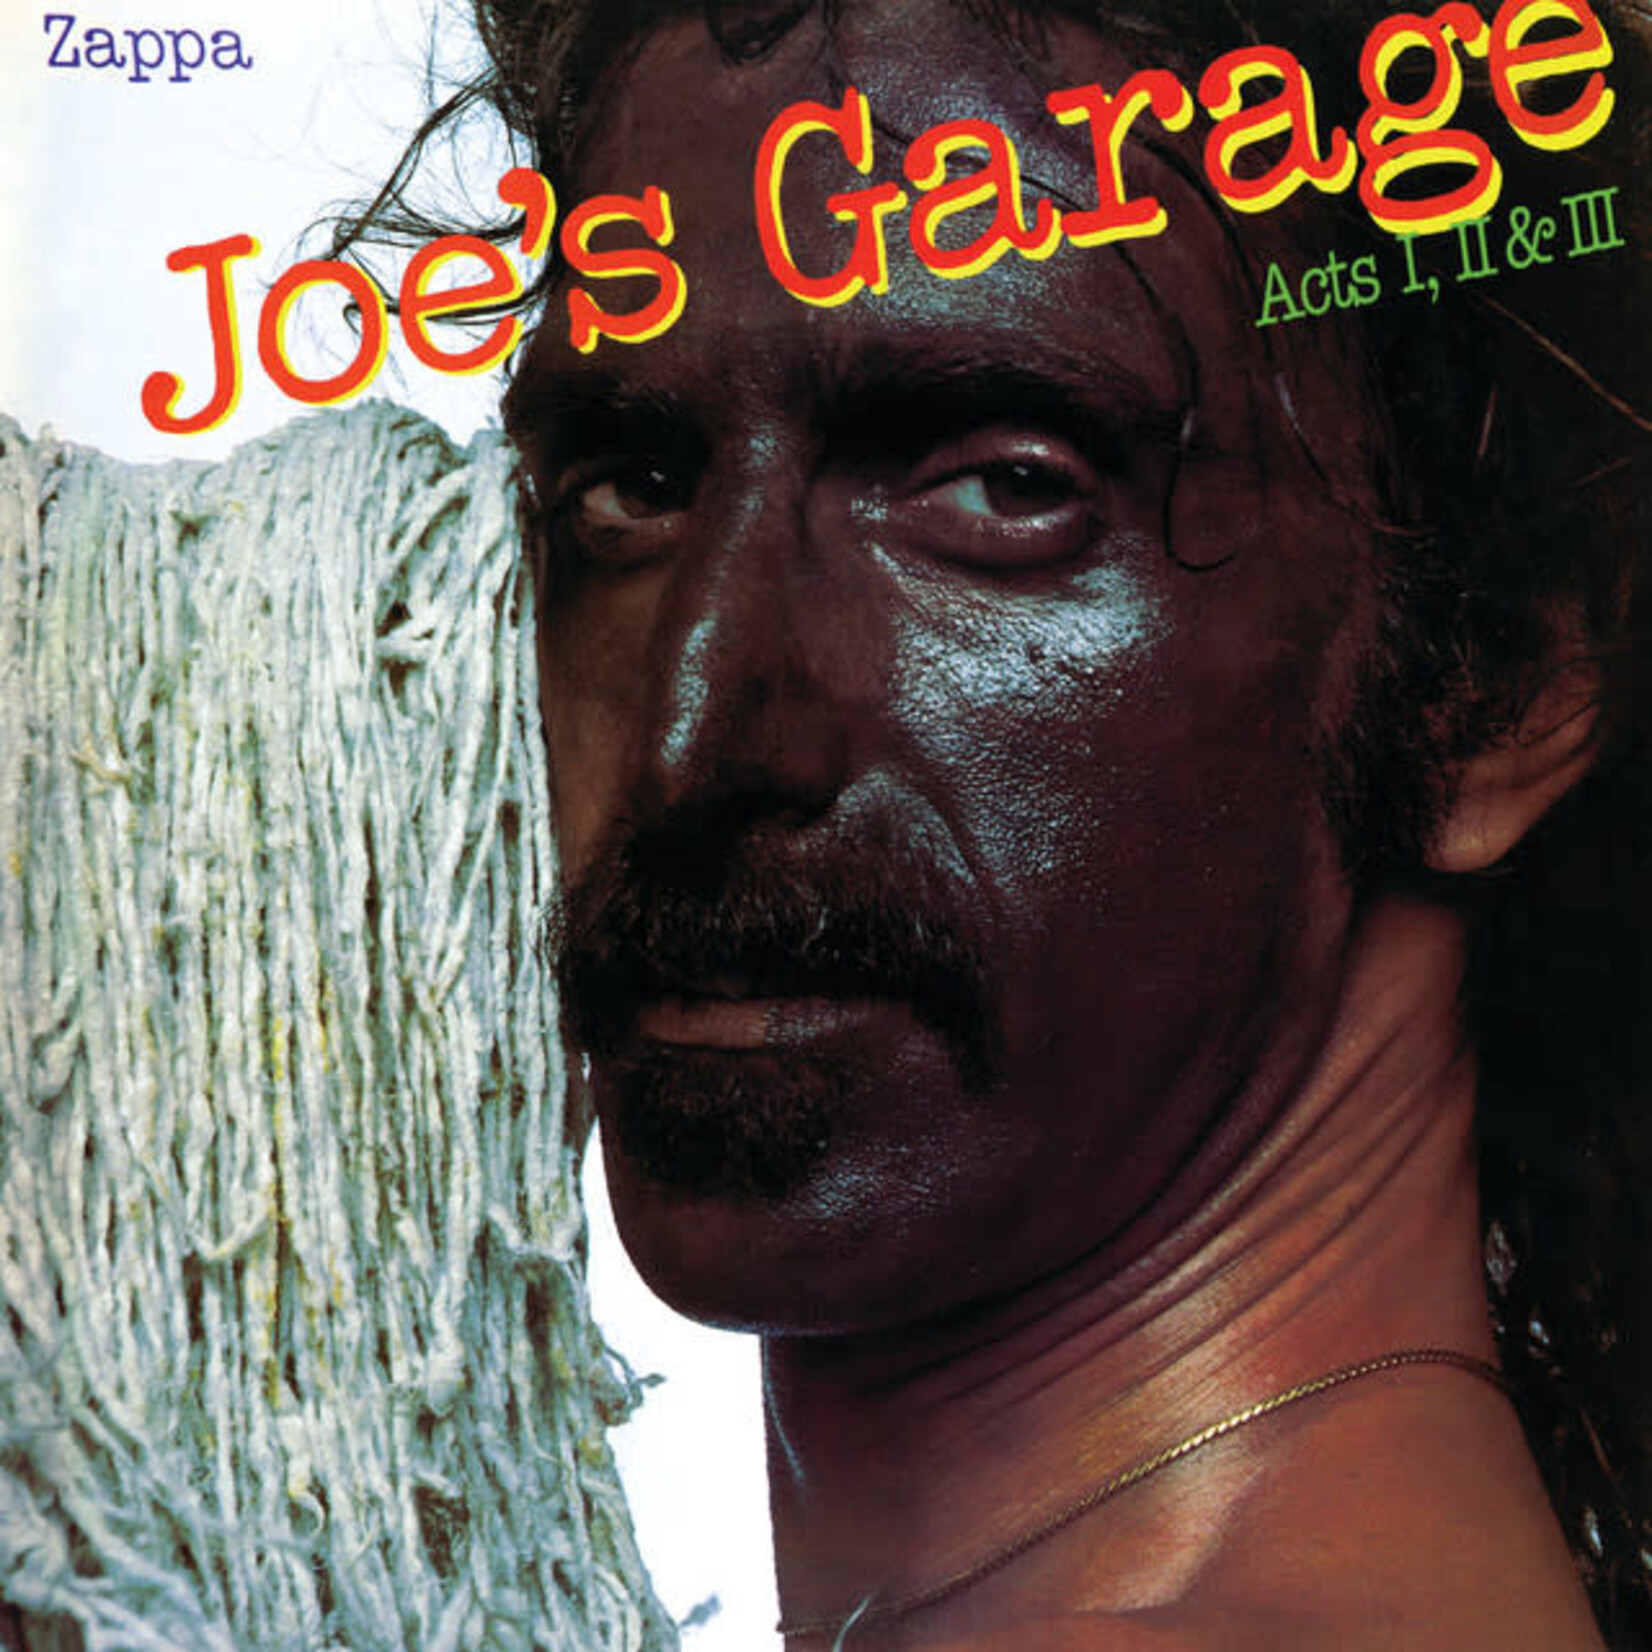 Vinyl Frank Zappa - Joe's Garage Acts I, II & III